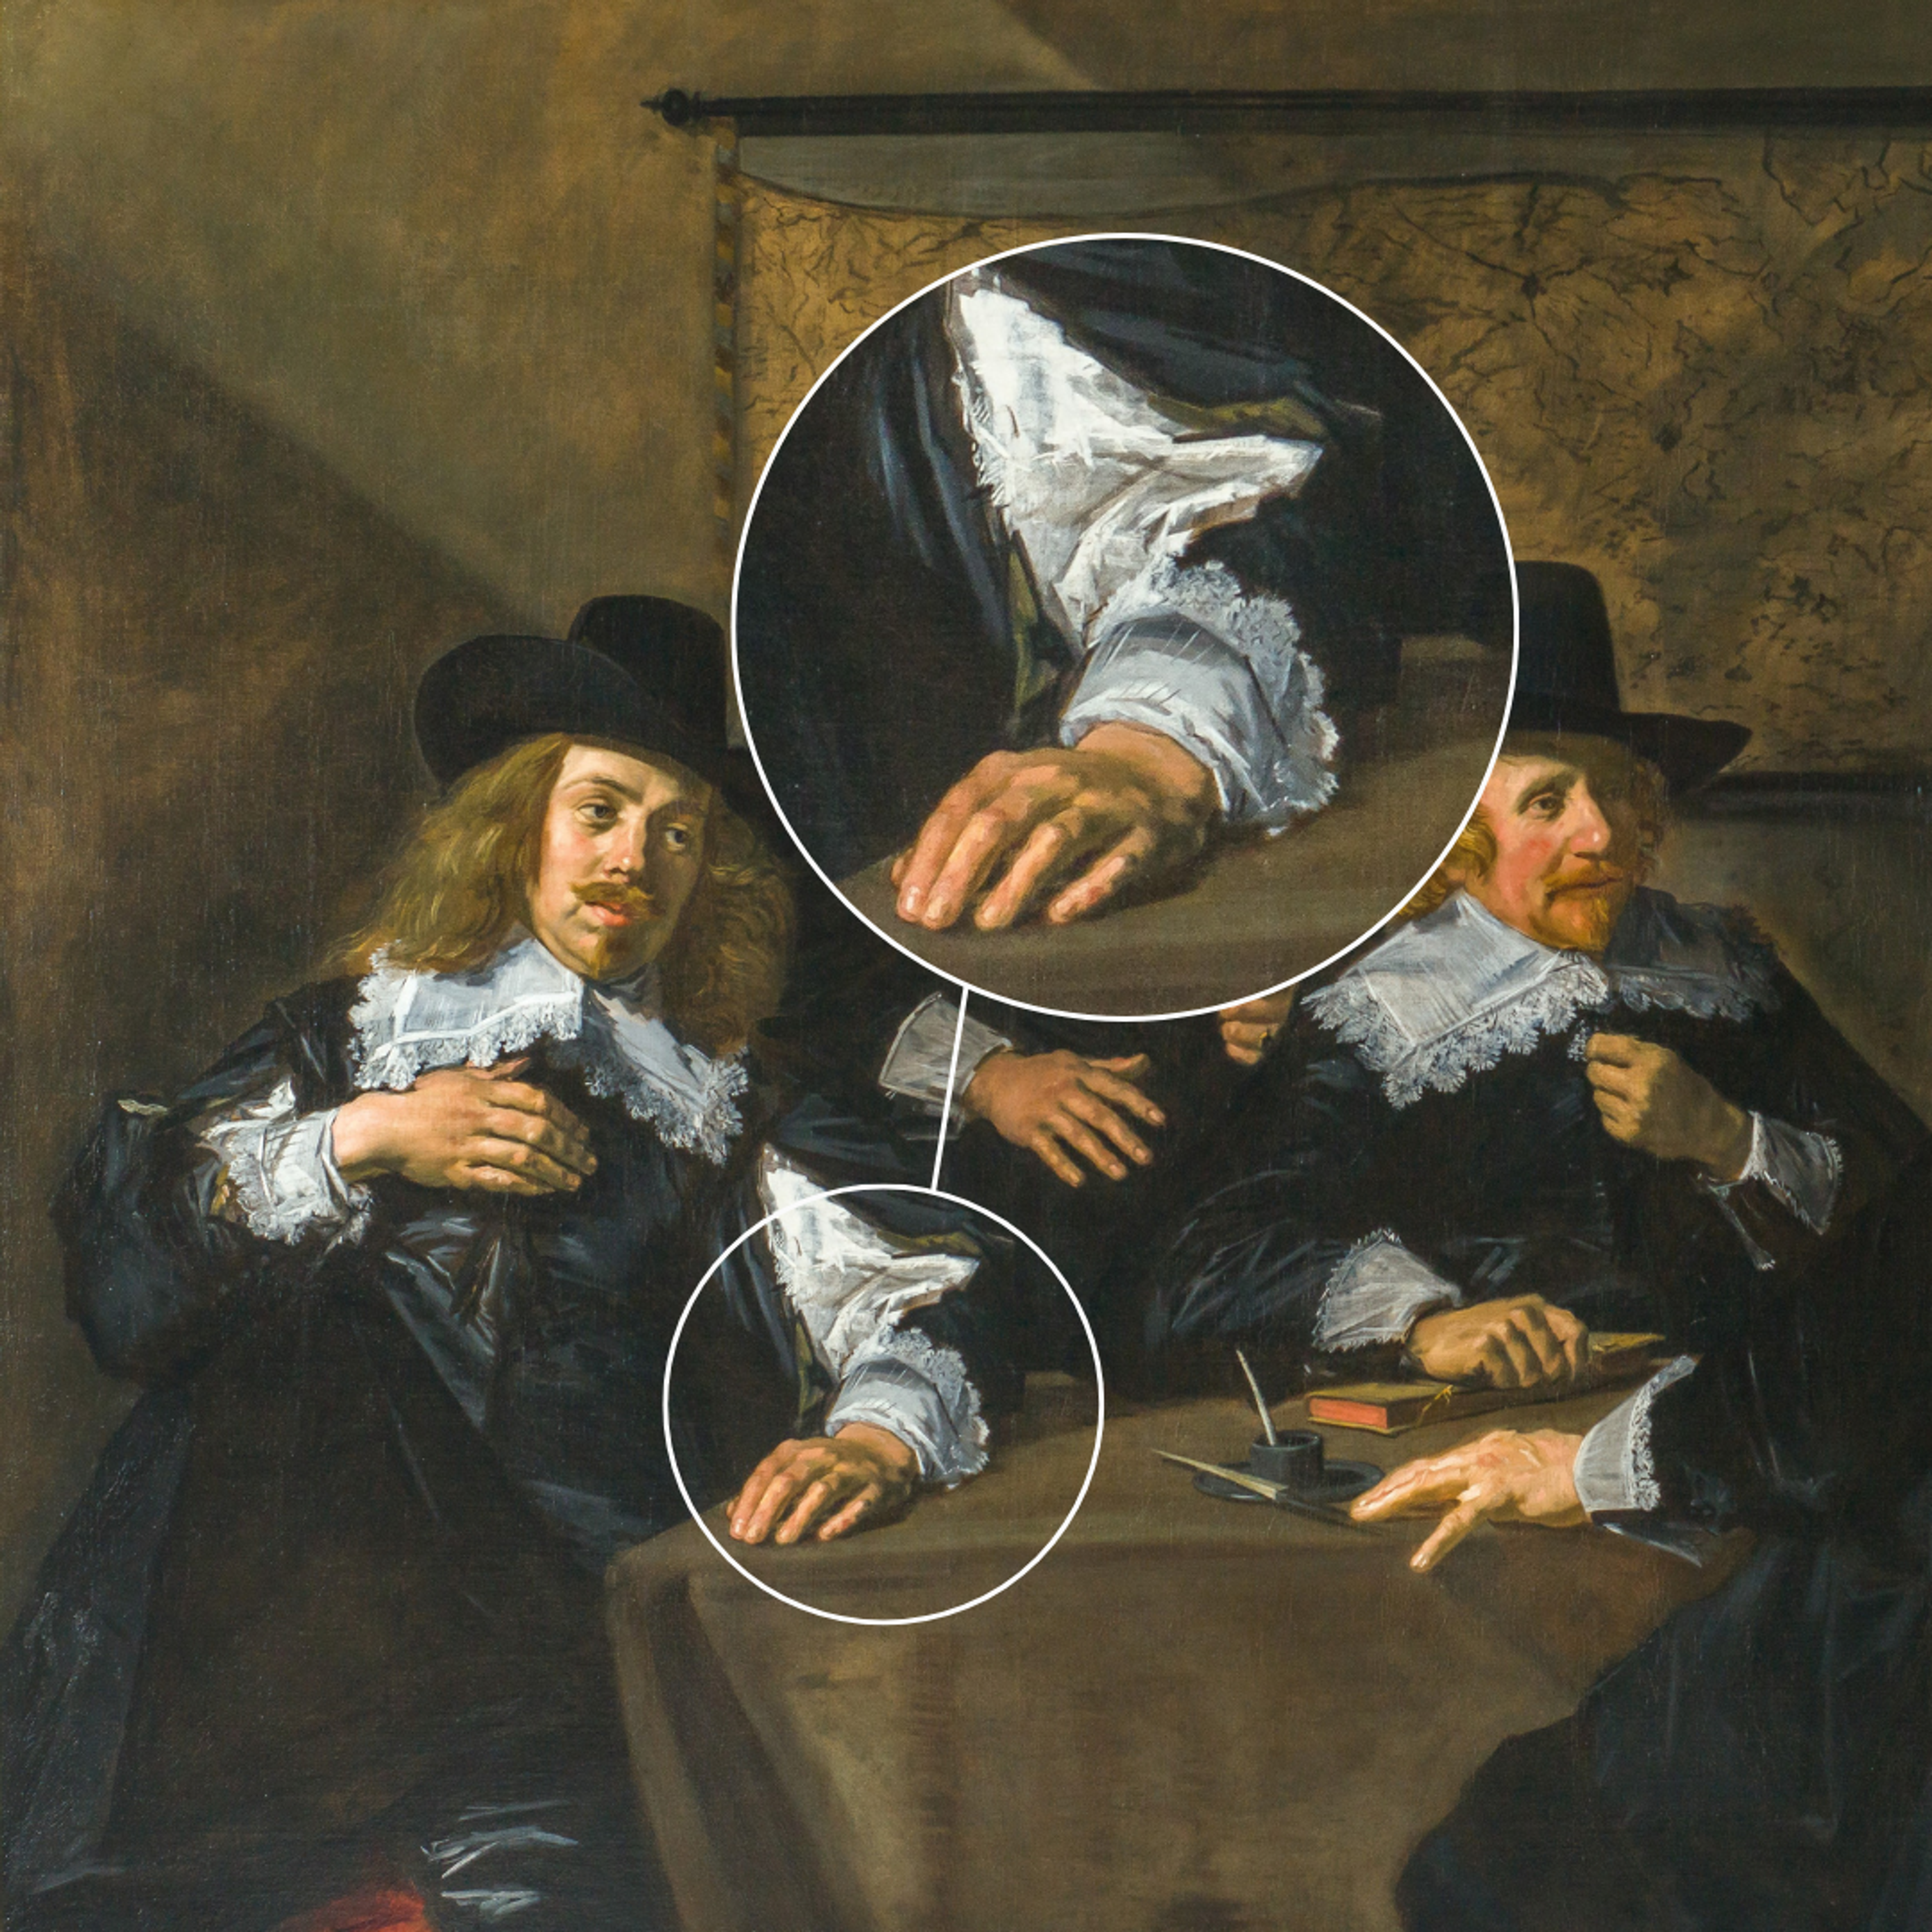 Inzoom op schilderij van Frans Hals met ruwe stijl.